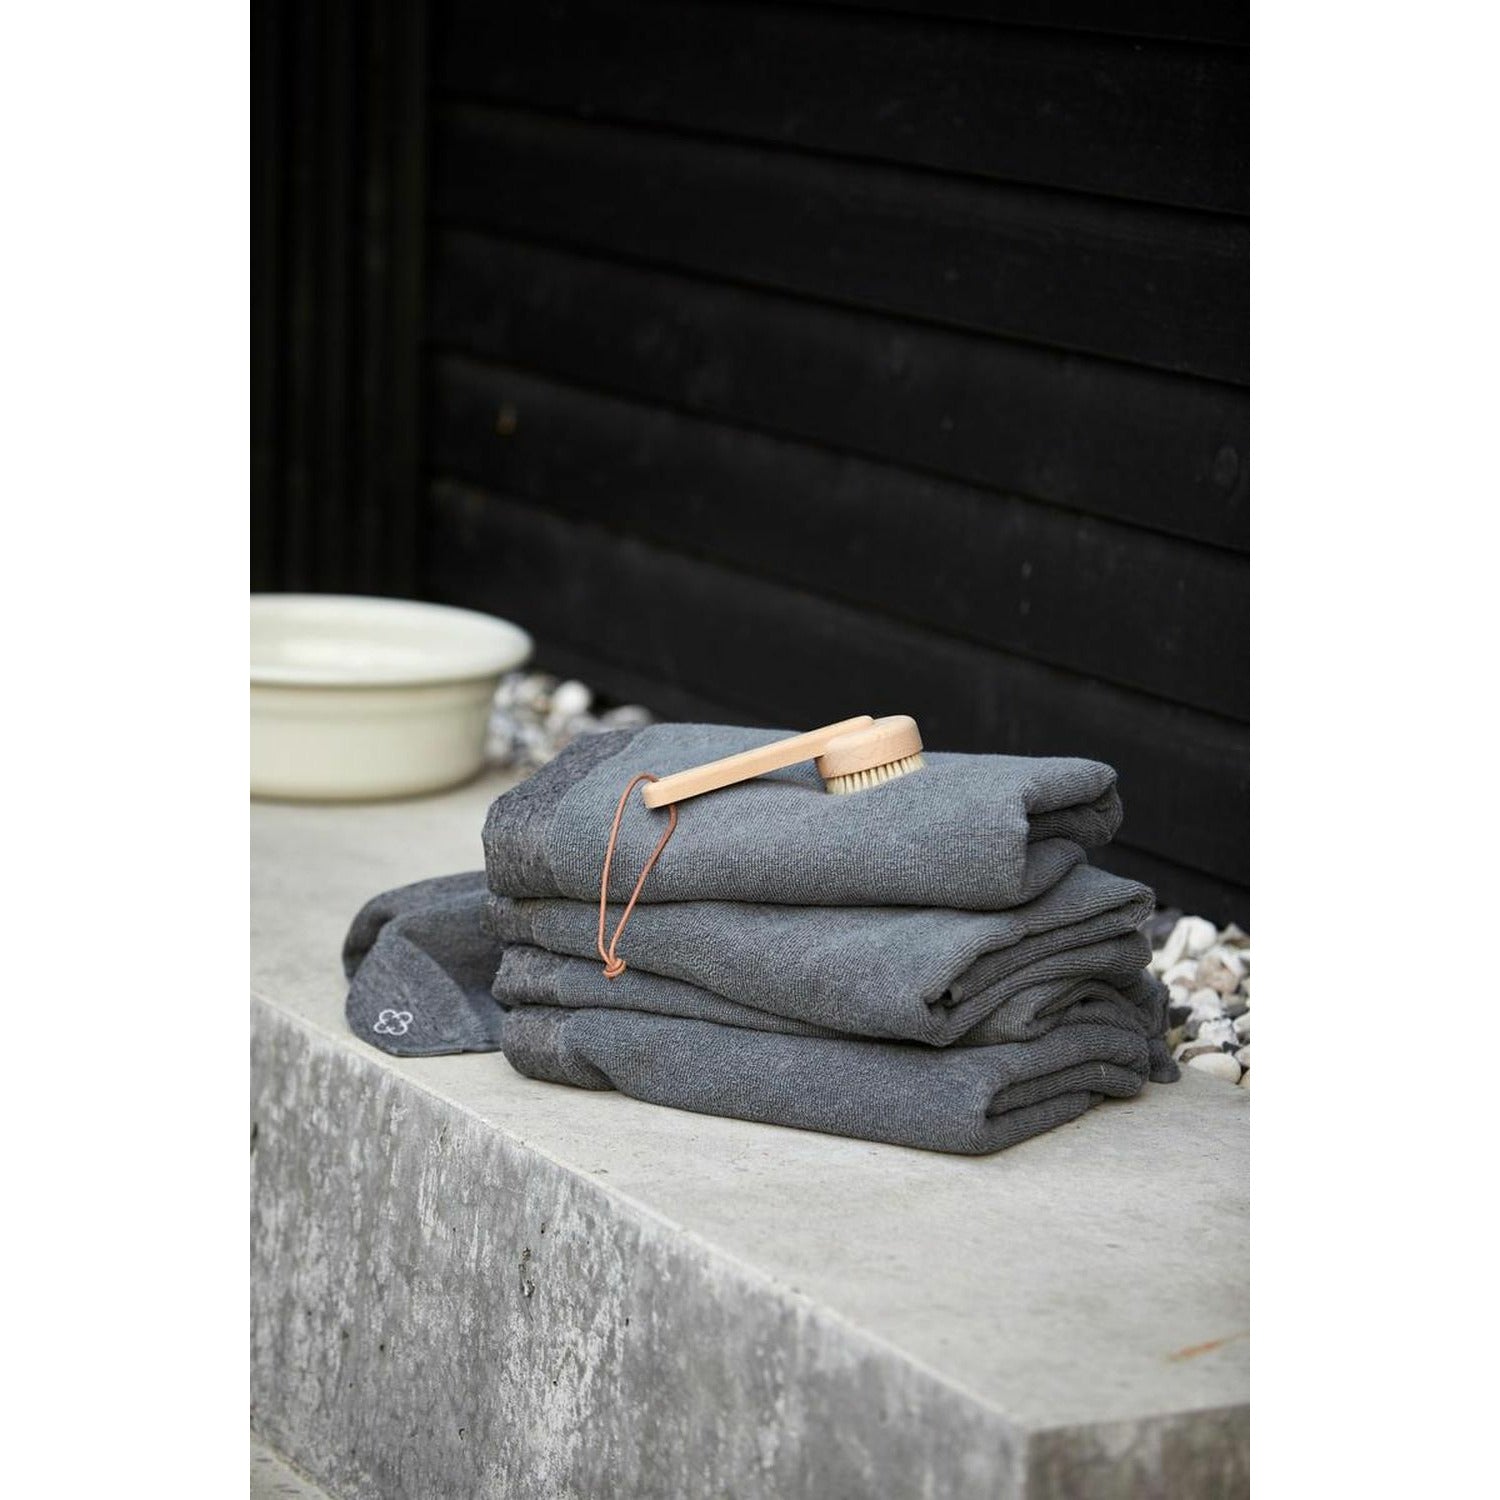 Dánská zóna lázeňského ručníku INU 140 x70 cm, šedá